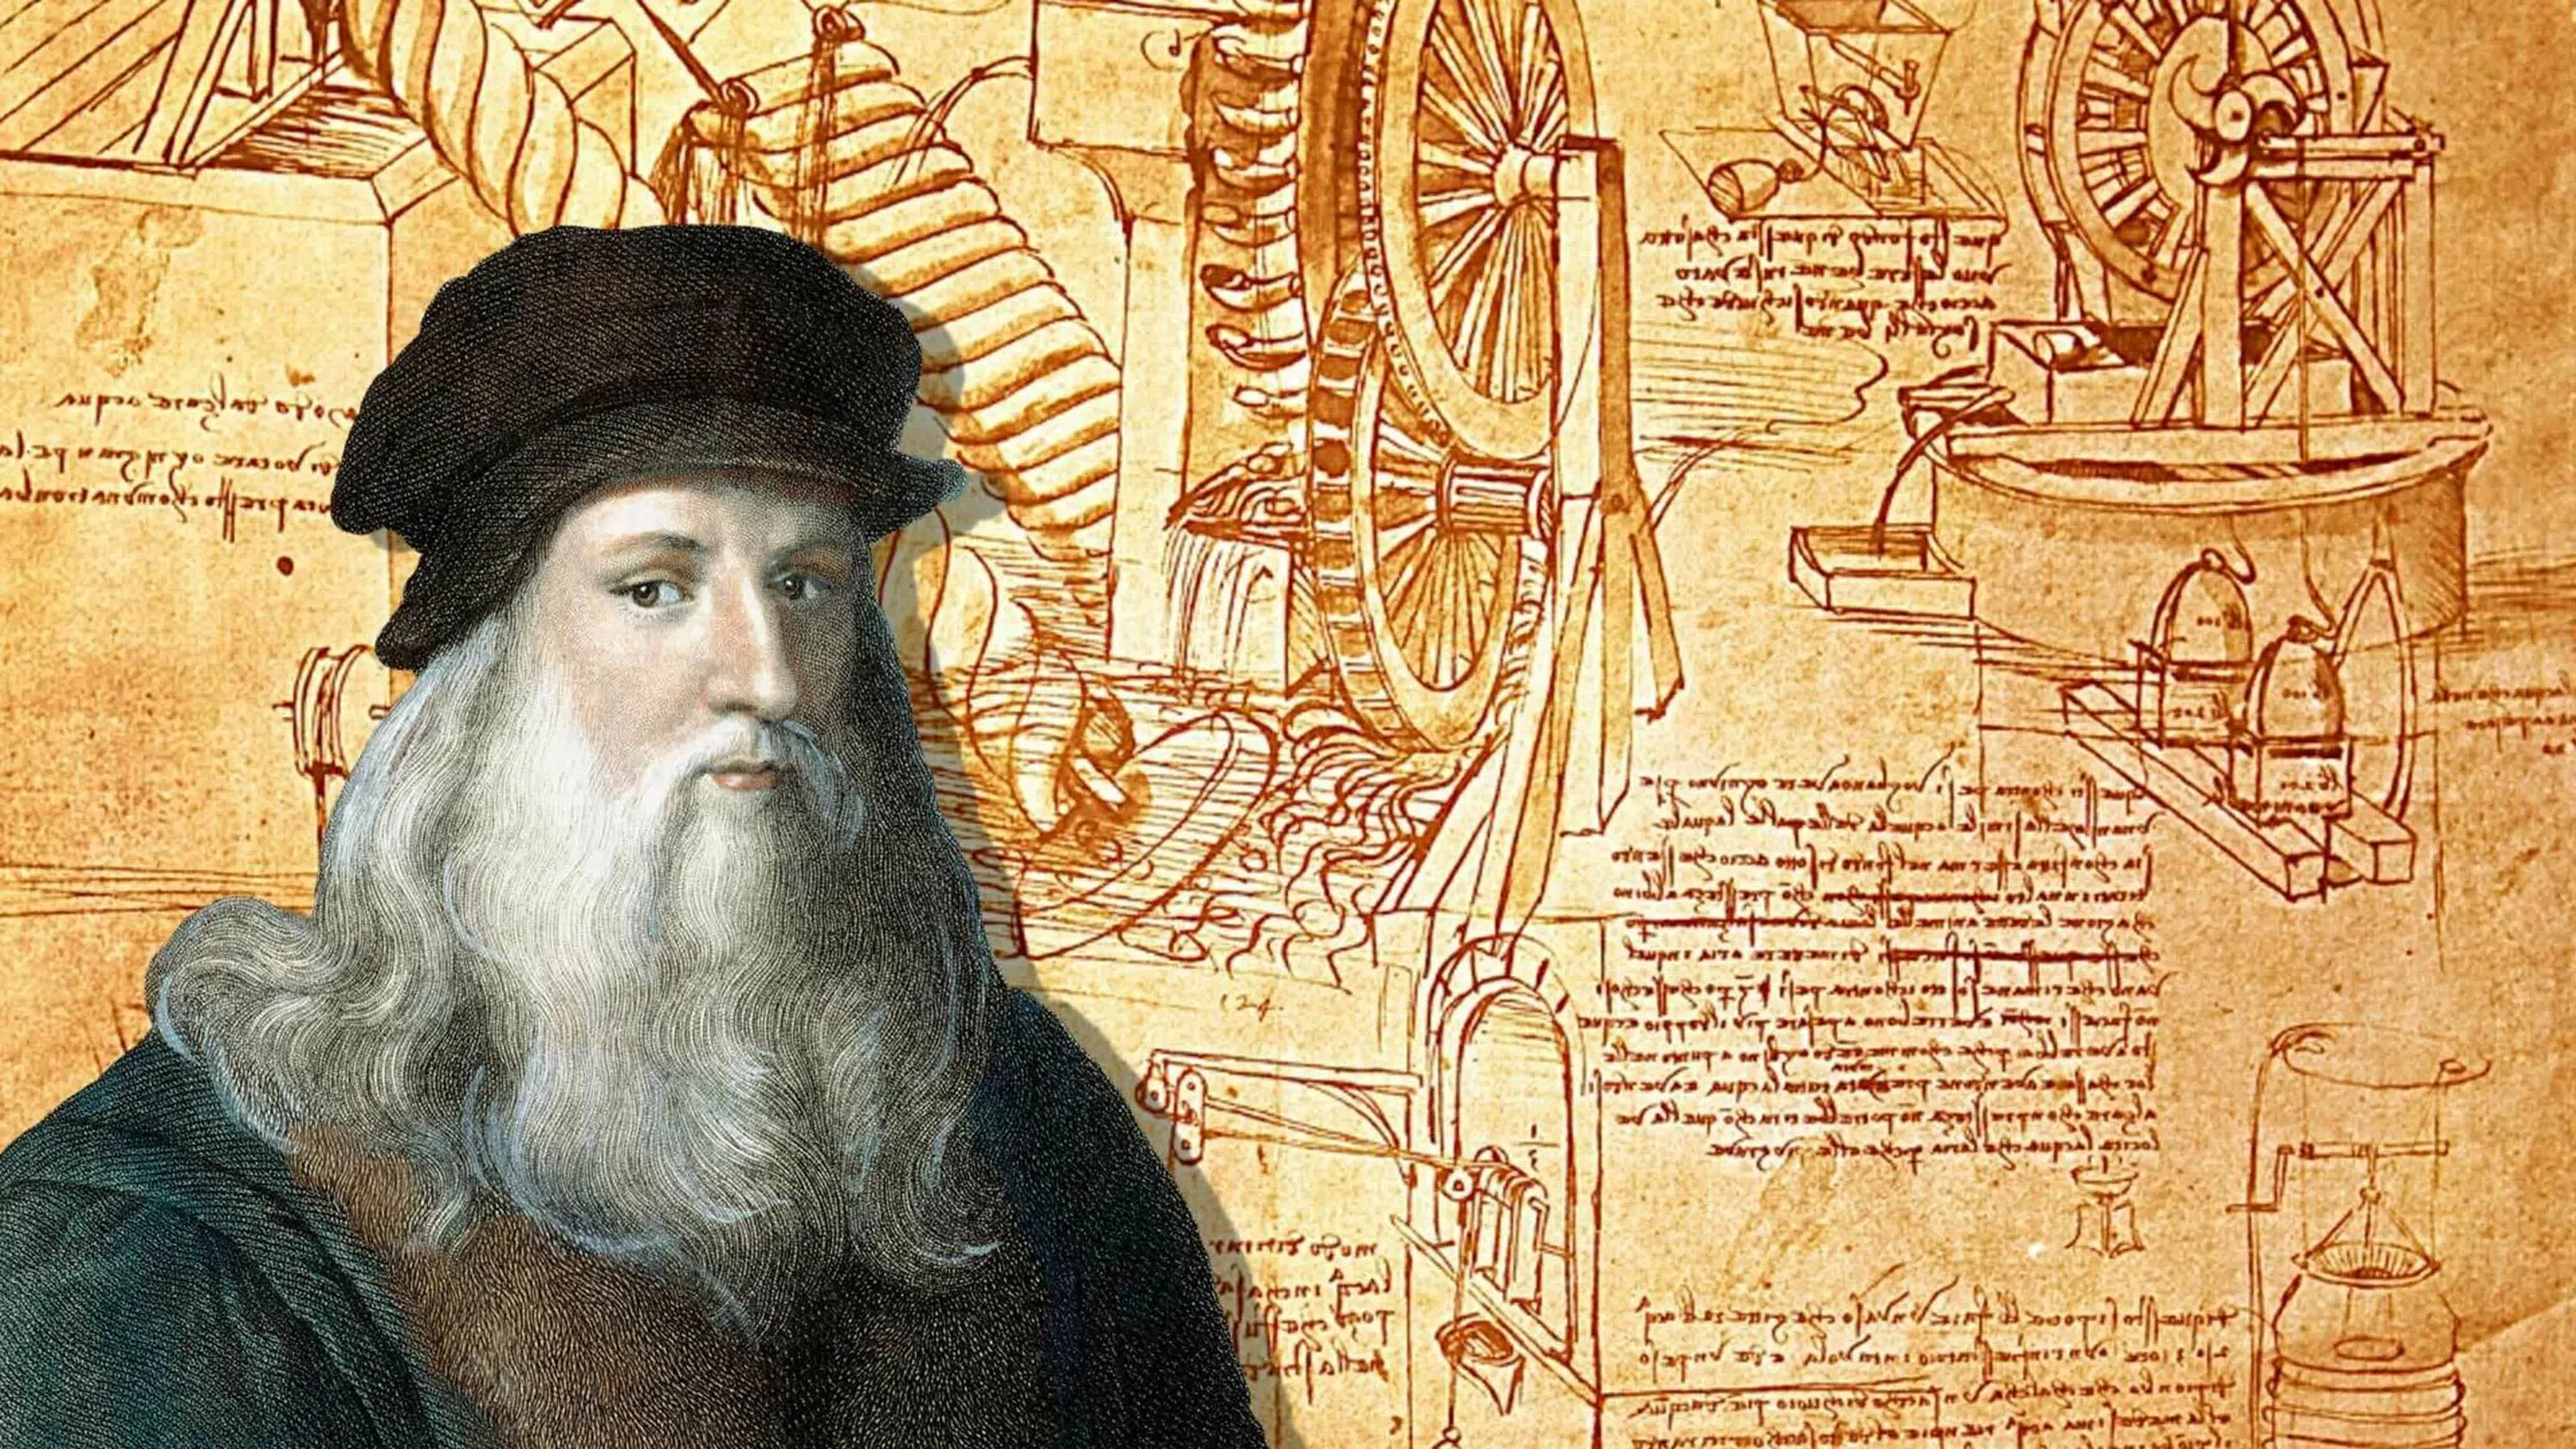 Леонардо да Винчи (1452-1519). Леонардо да Винчи художник и изобретатель. Эпоха Возрождения Леонардо Давинчи. Леонардо да Винчи (1452 – 1509). Гении возрождения